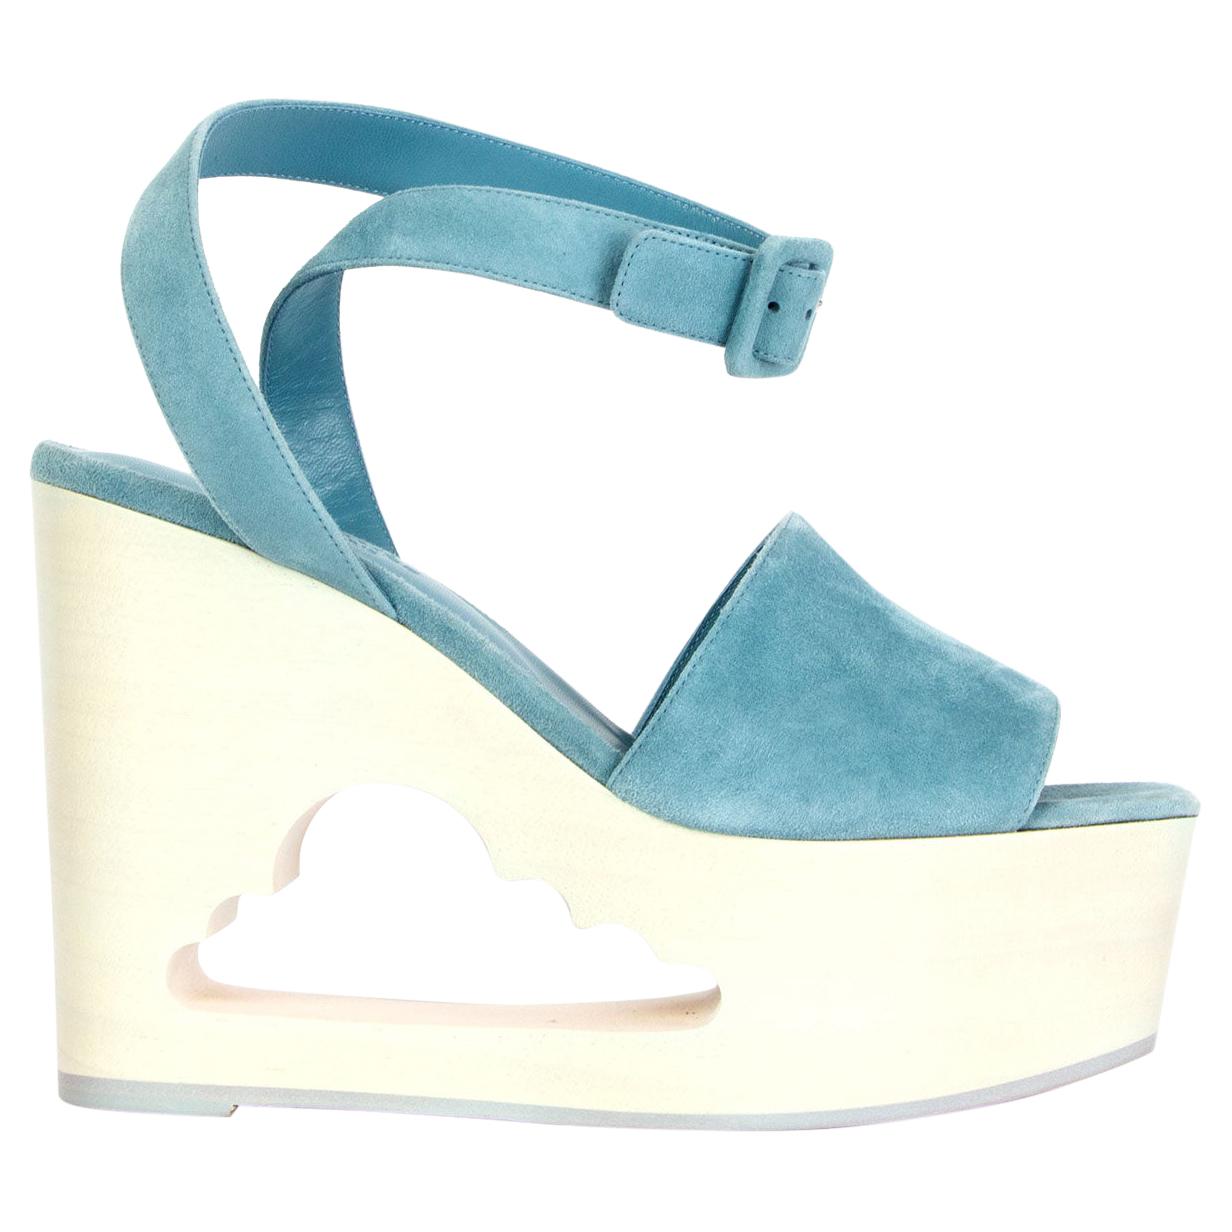 HERMES light blue suede TENDRESSE Cloud Wedge Platform Sandals Shoes 38.5